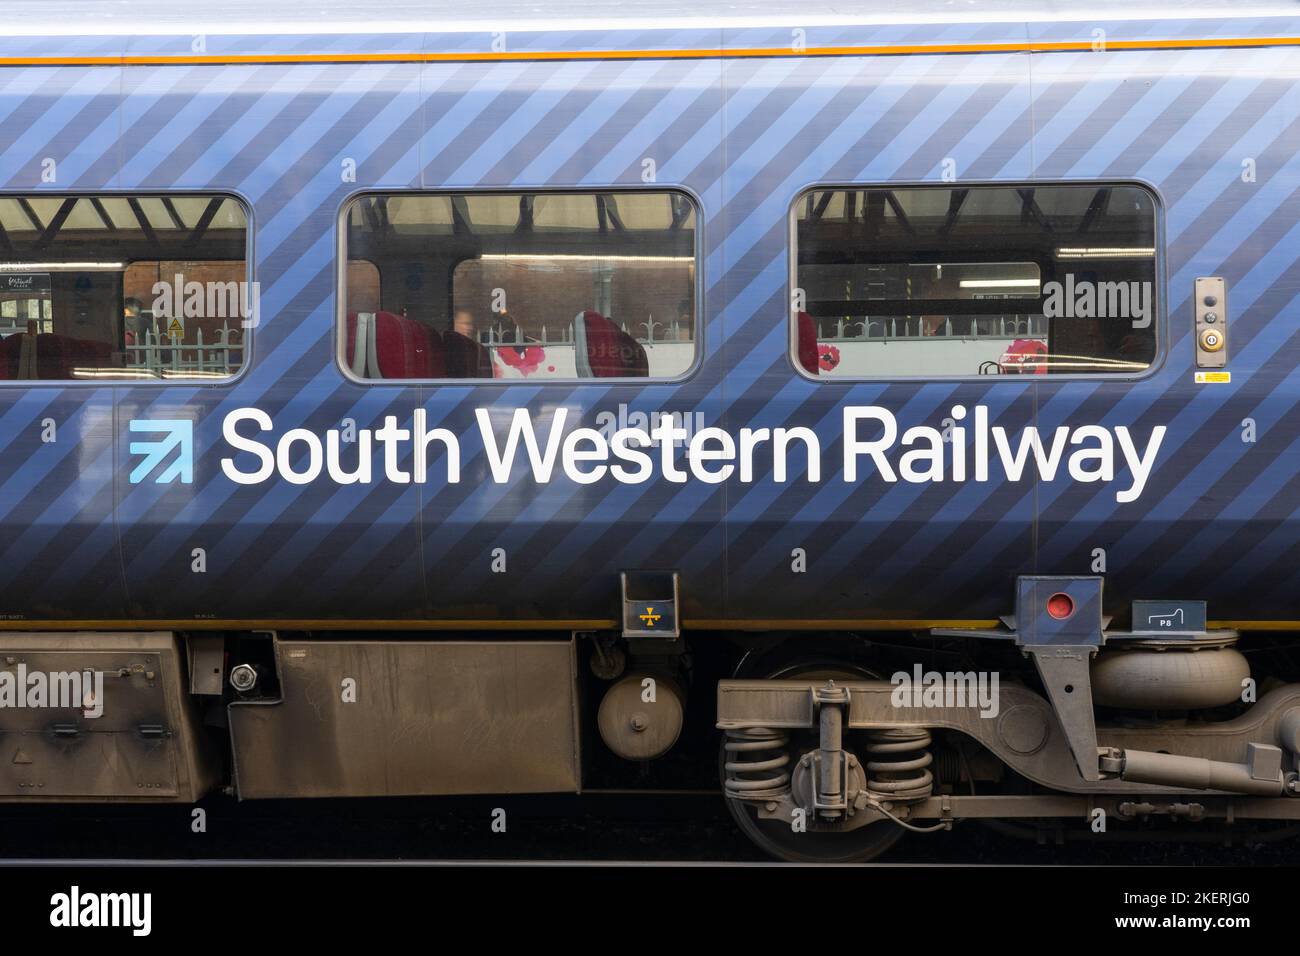 Logotipo de South Western Railway en el lateral de un autobús de pasajeros en la estación de tren de Basingstoke. Inglaterra. Concepto: Franquicia ferroviaria, precios de billetes Foto de stock